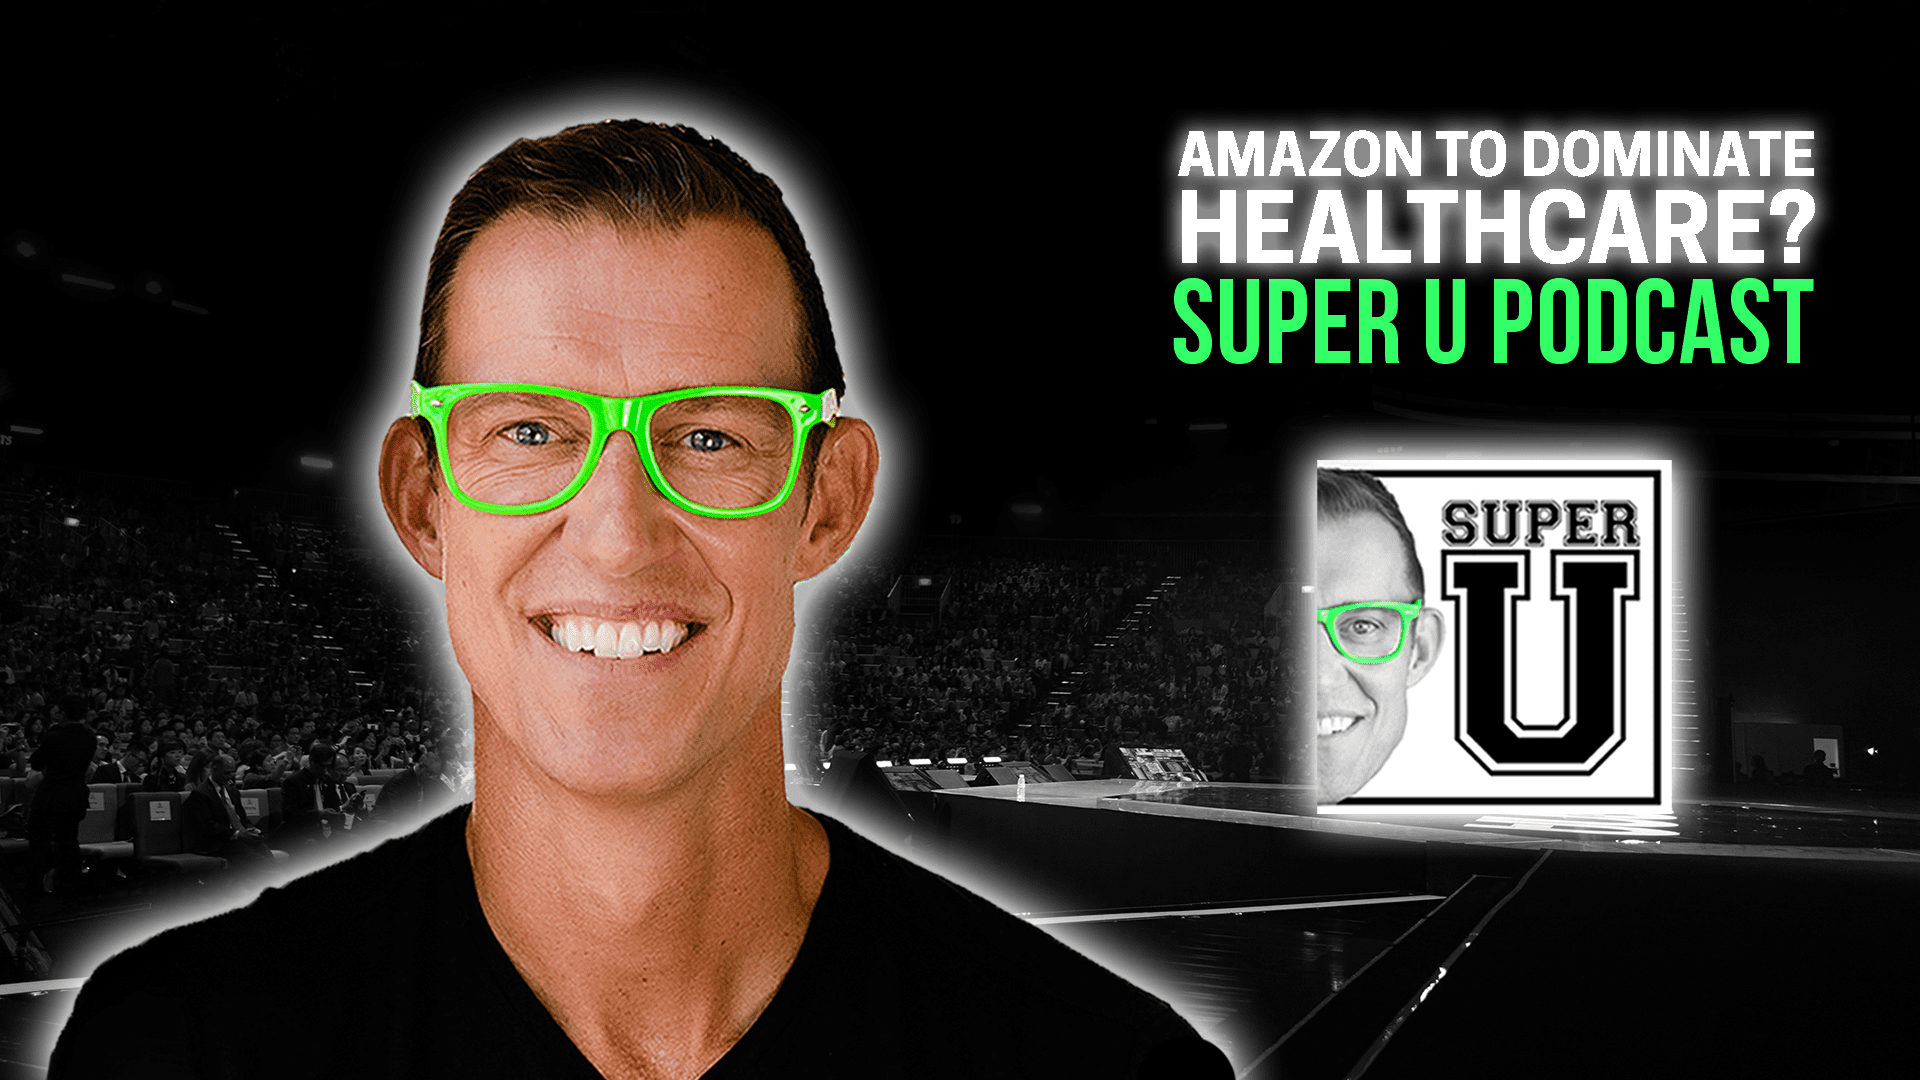 super-u-podcast-amazon-to-dominate-healthcare